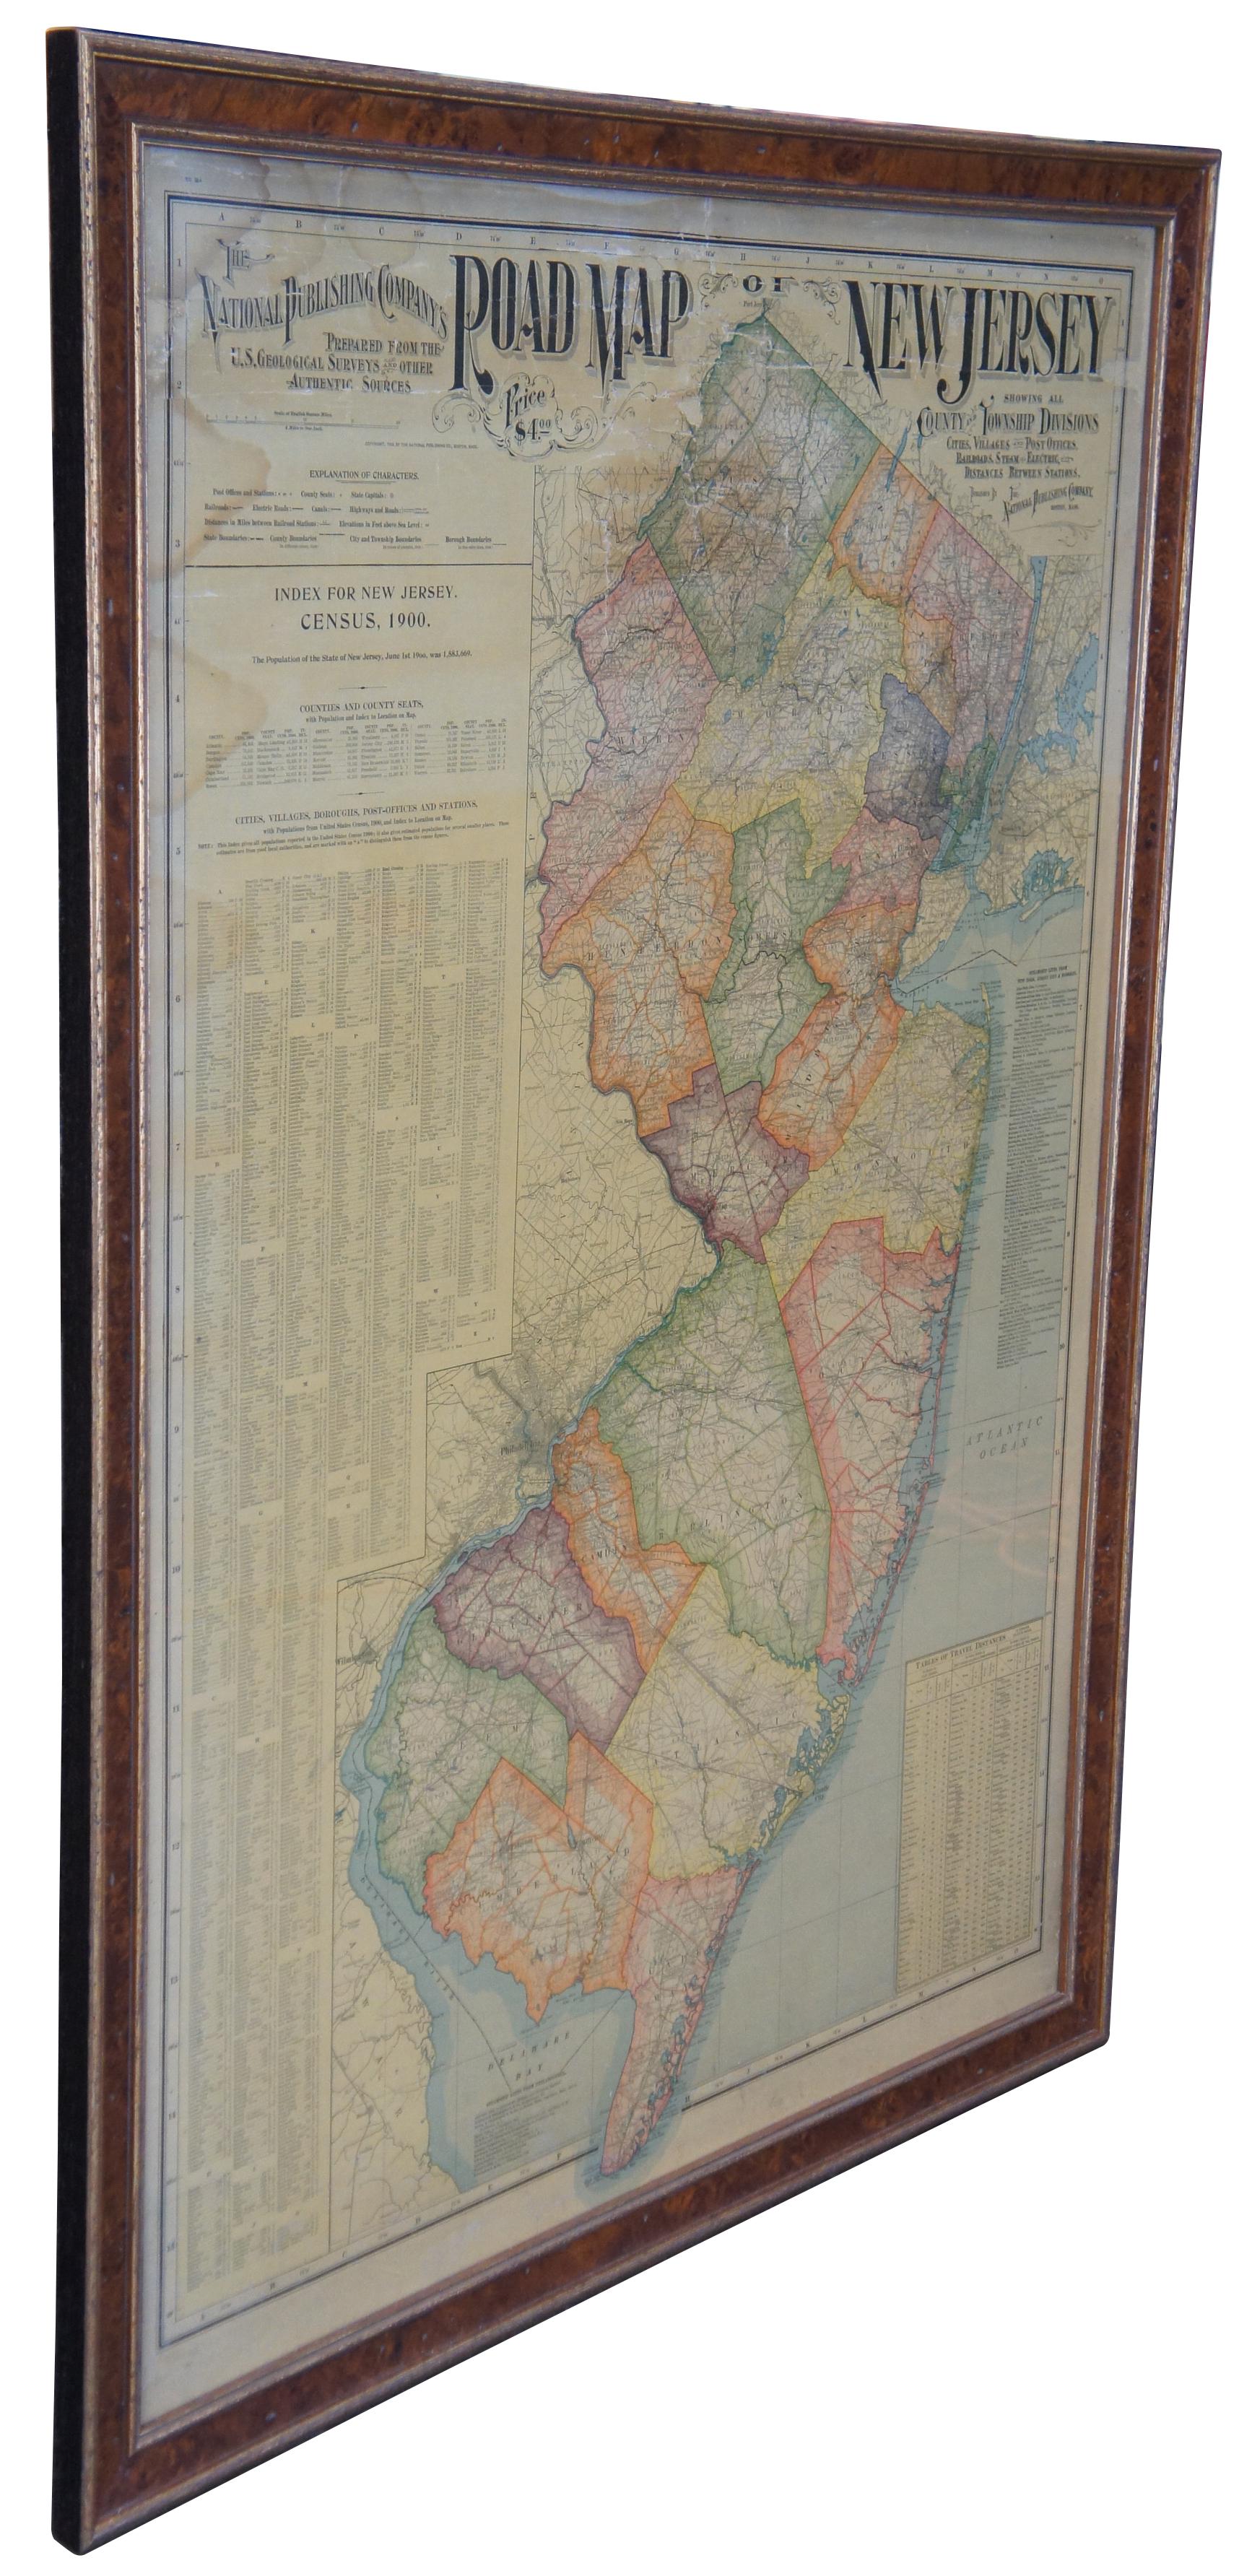 1903 antike New Jersey Straßenkarte von The National Publishing Company of Boston Massachusettes, Nr. 384. Index für die Volkszählung 1900 in New Jersey, Einwohnerzahl 1.883.669. Gerahmt in Wurzelholz mit Goldakzent. 

Maße: Karte 44,5